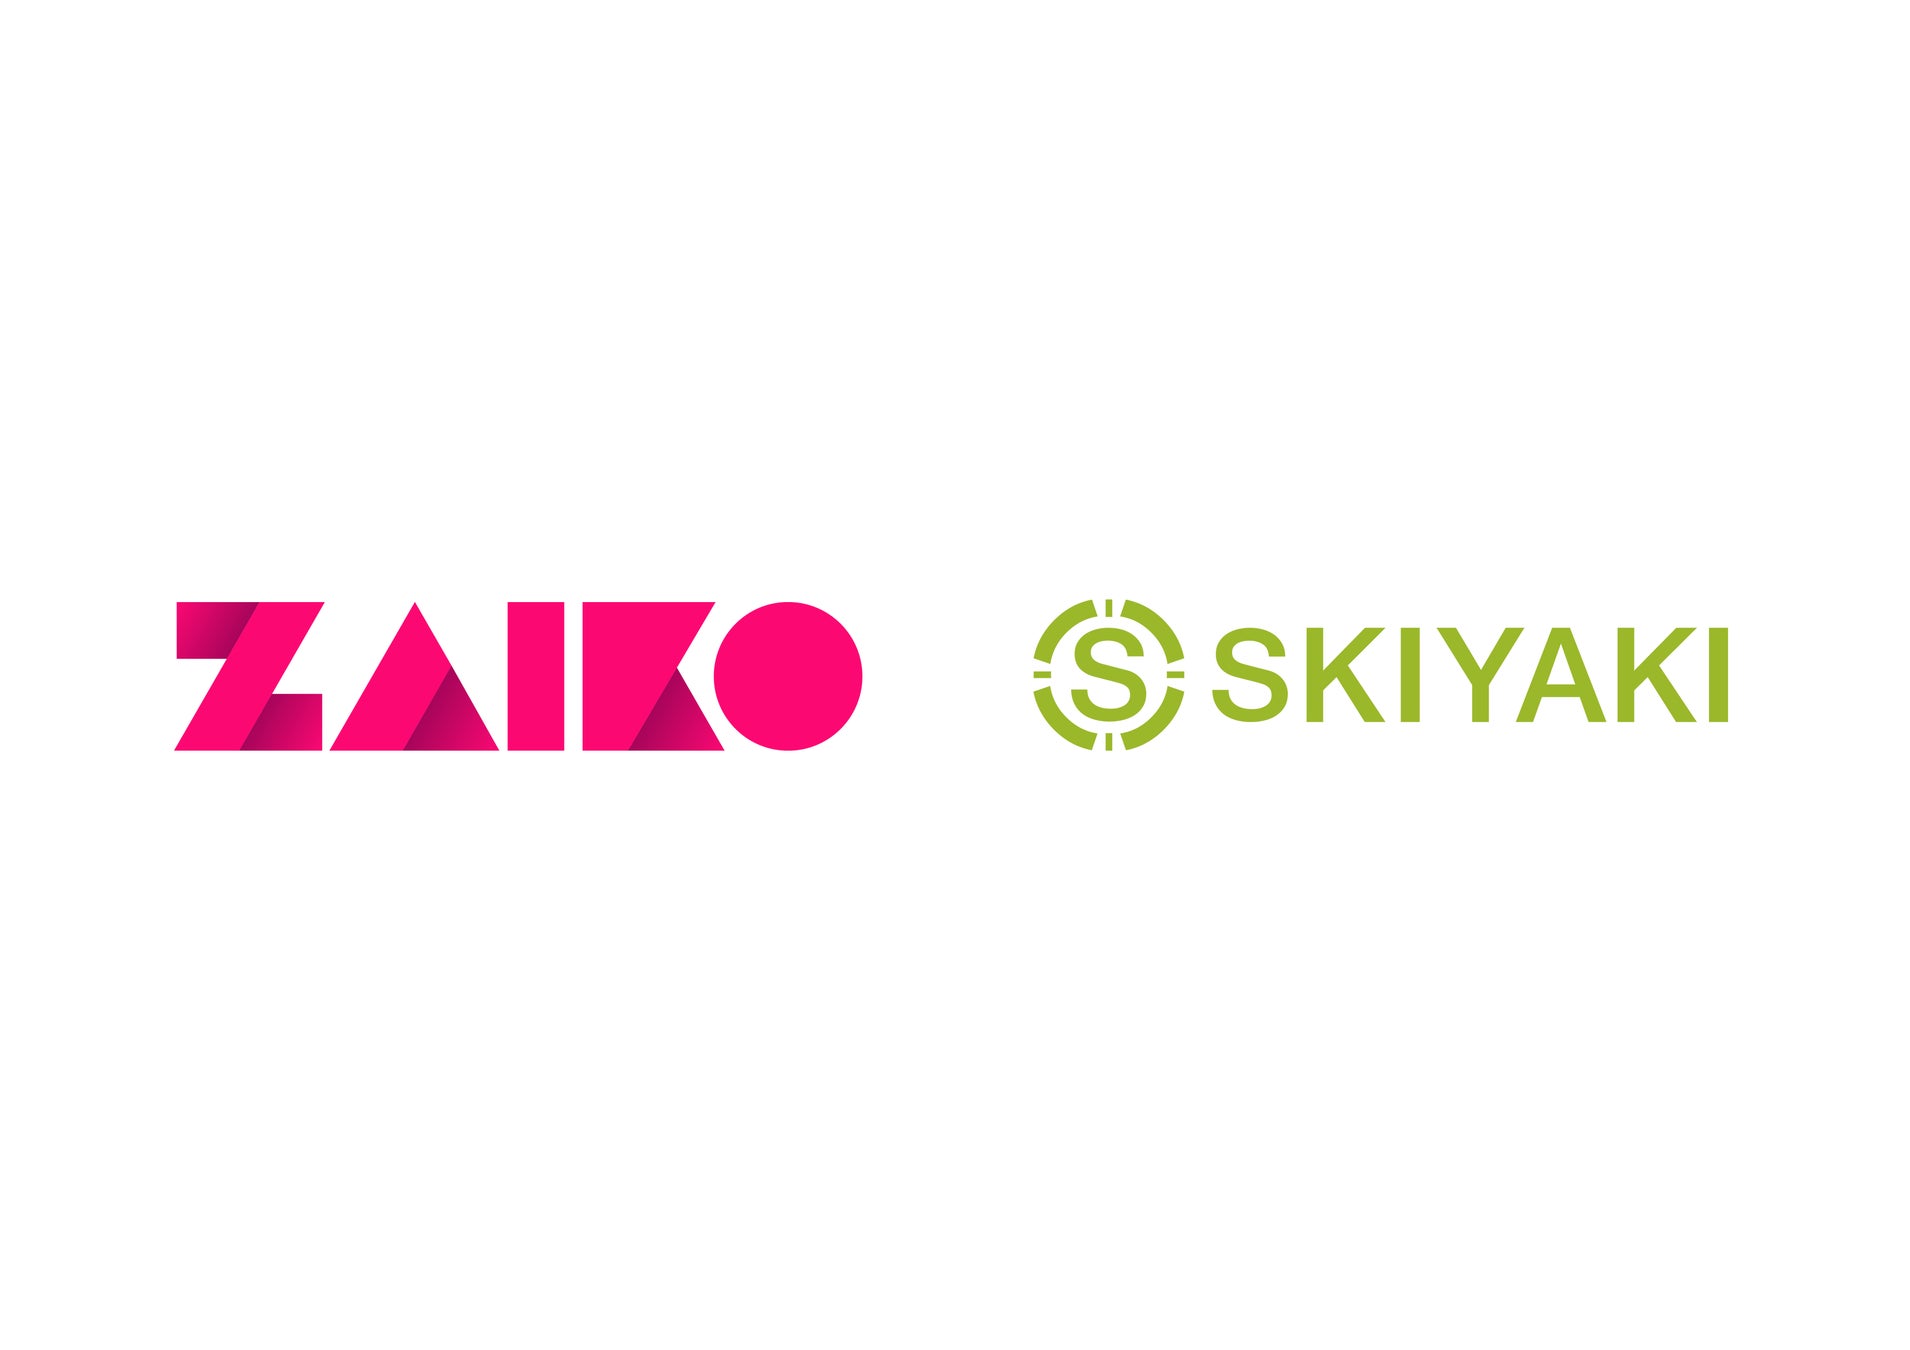 株式会社SKIYAKI、デジタルイベント、動画配信、データアナリティクス、NFTなどの領域でプロダクト・サービスを提供するZAIKO株式会社と業務提携